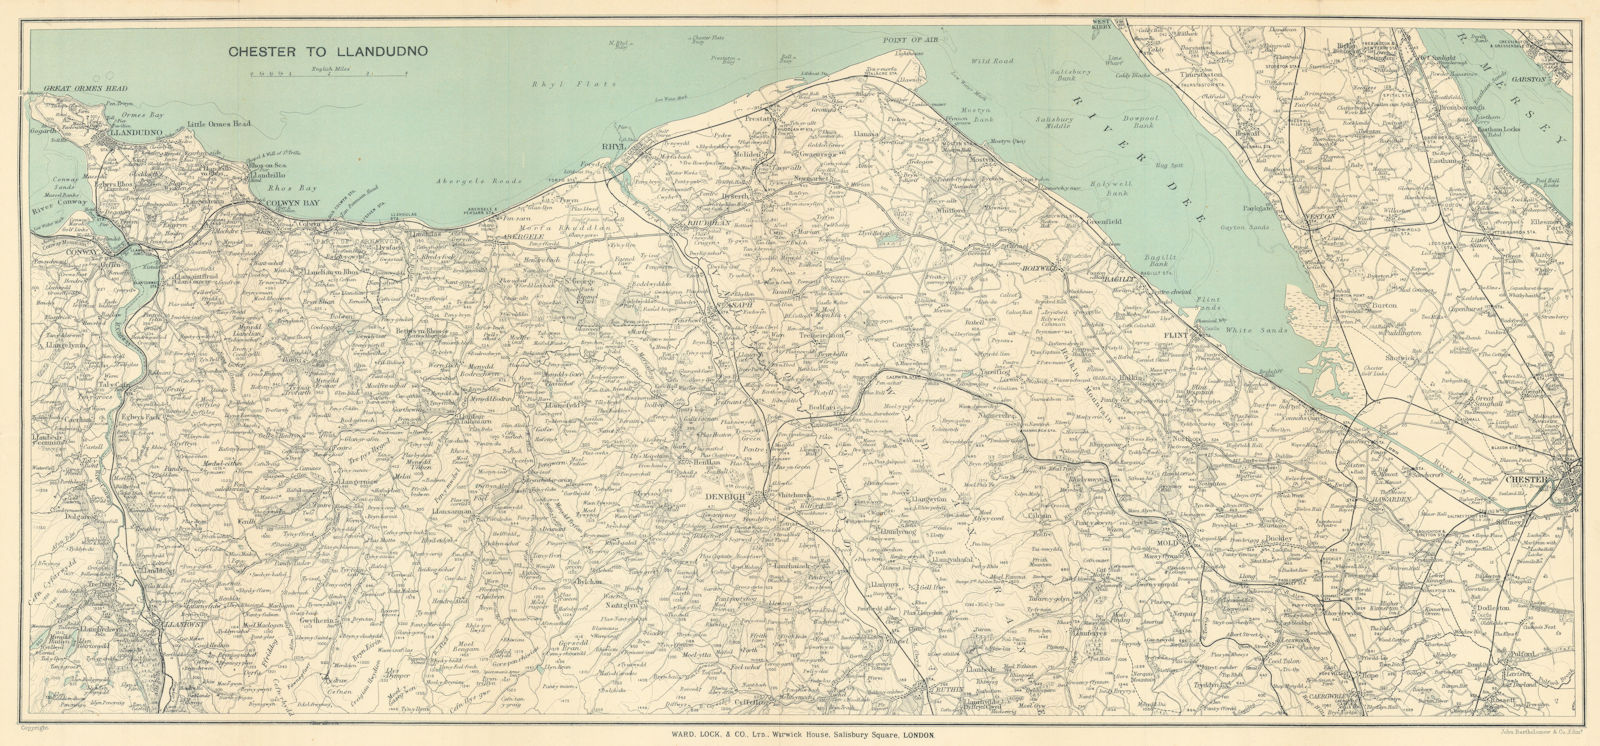 NORTH WALES COAST. Chester-Llandudno. Denbigh Rhyl Deeside. WARD LOCK 1913 map